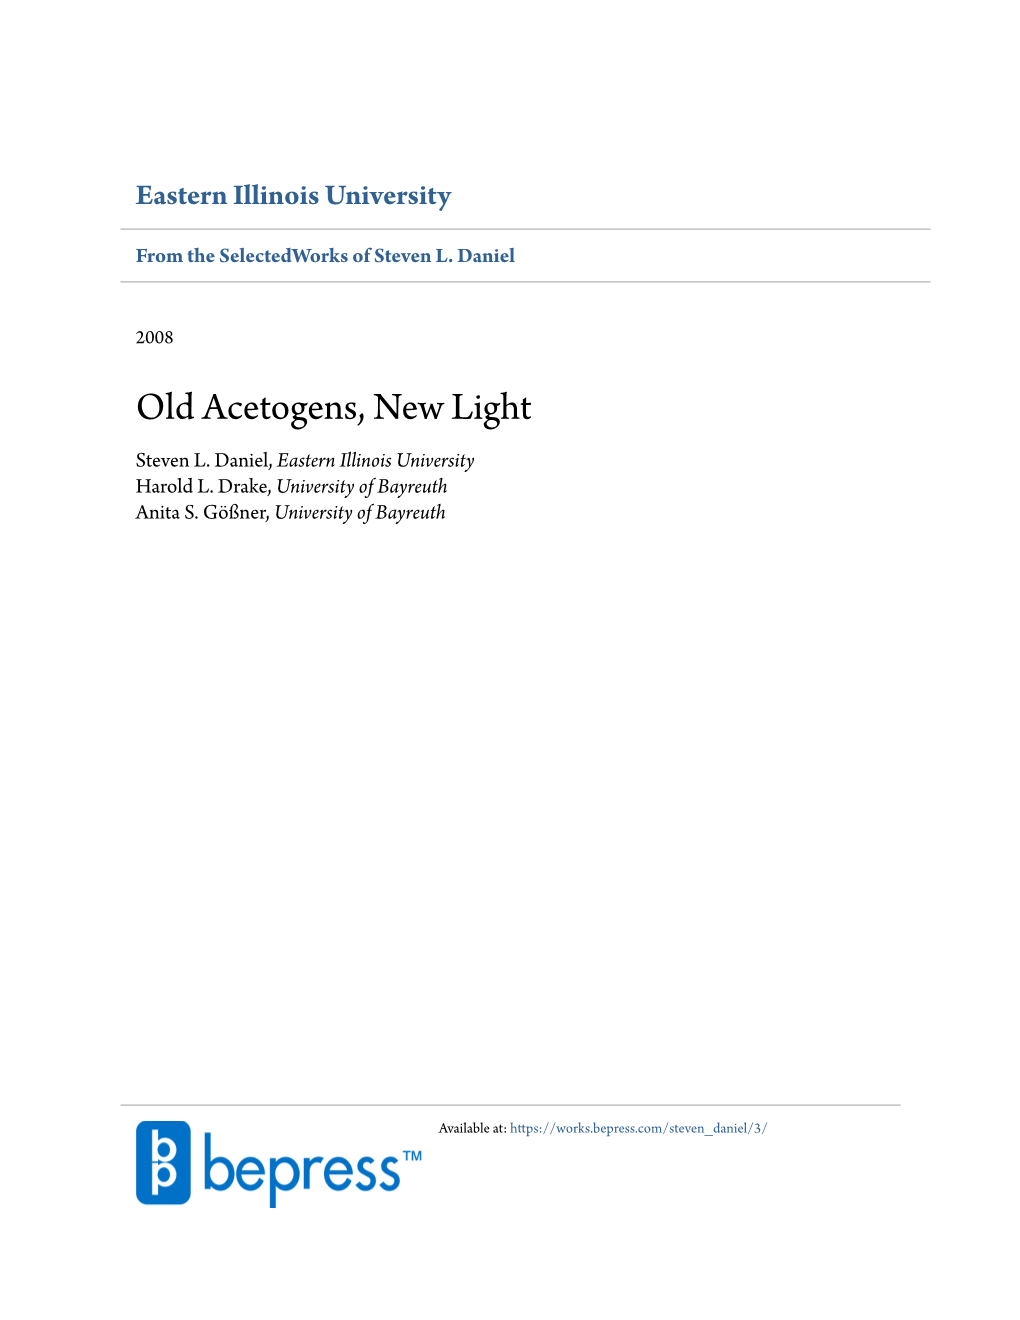 Old Acetogens, New Light Steven L